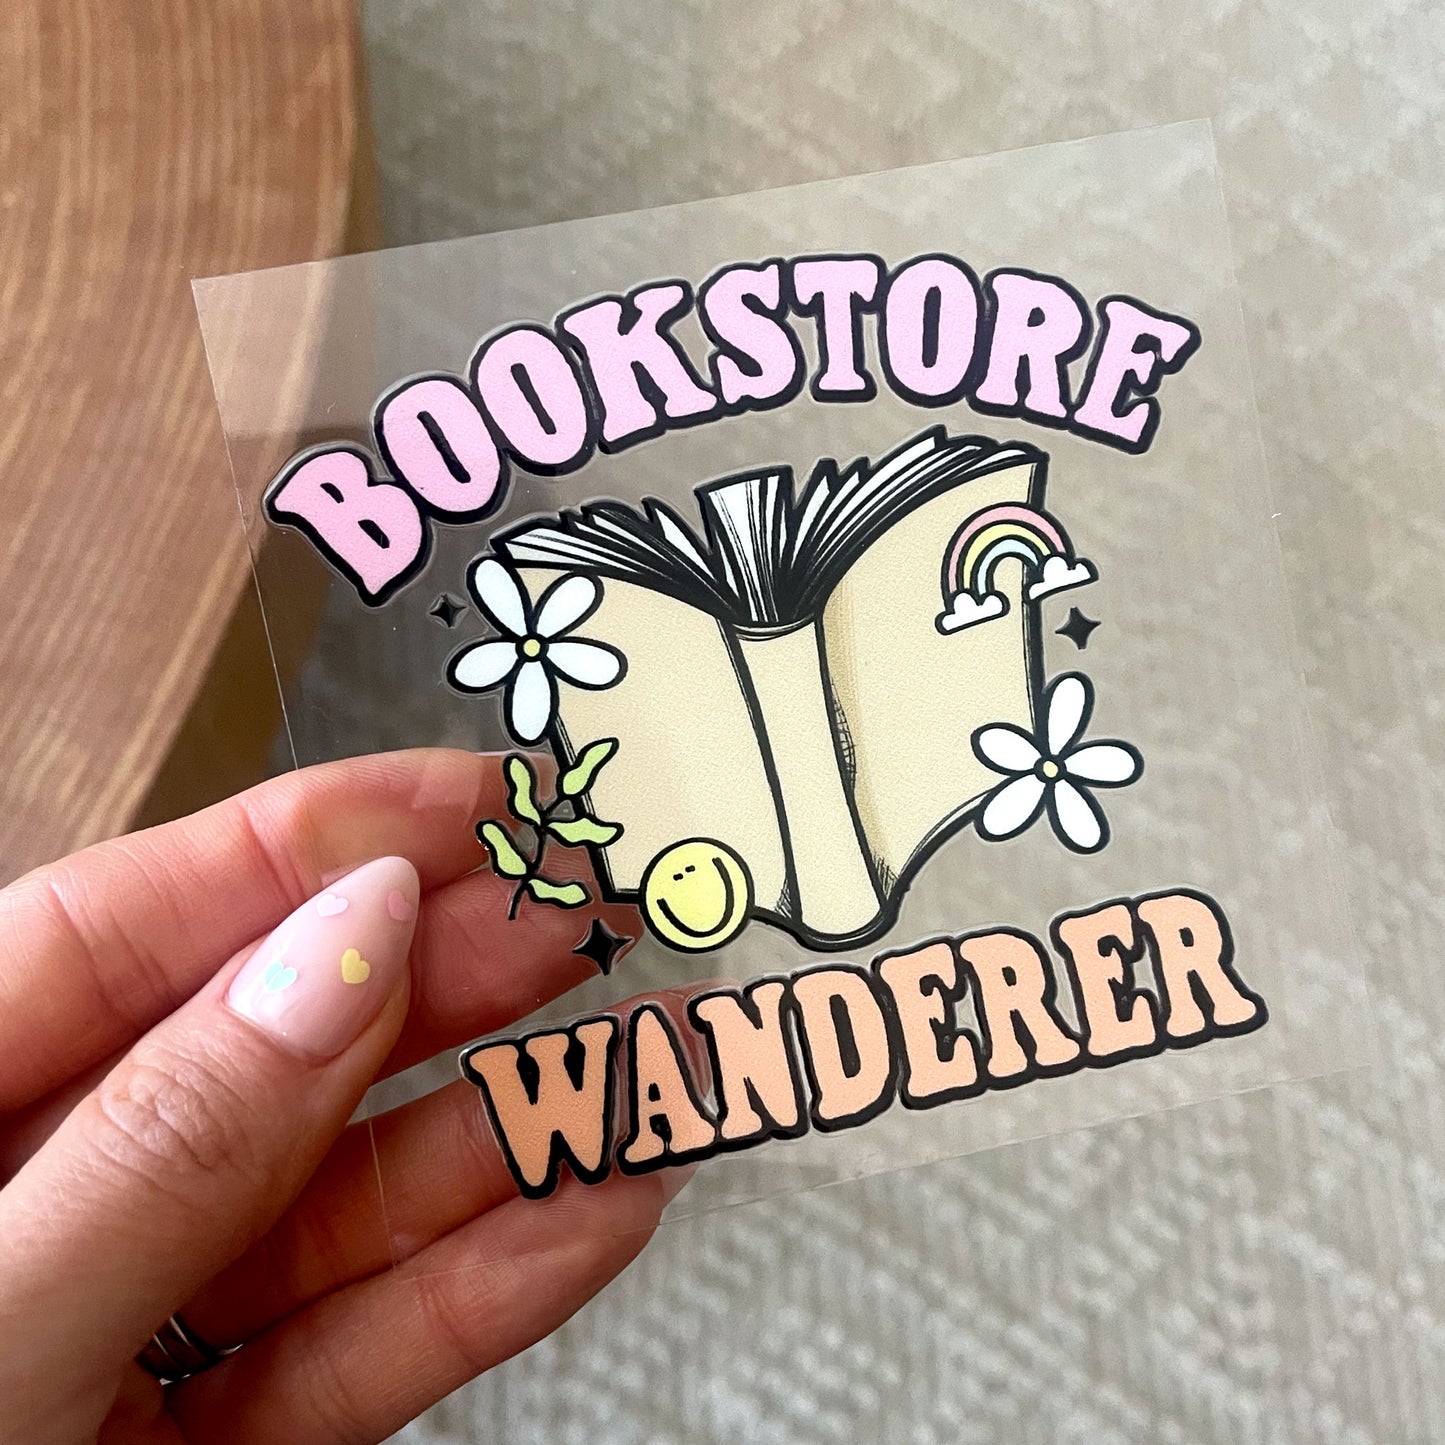 UV DTF Transfer | Bookstore Wanderer